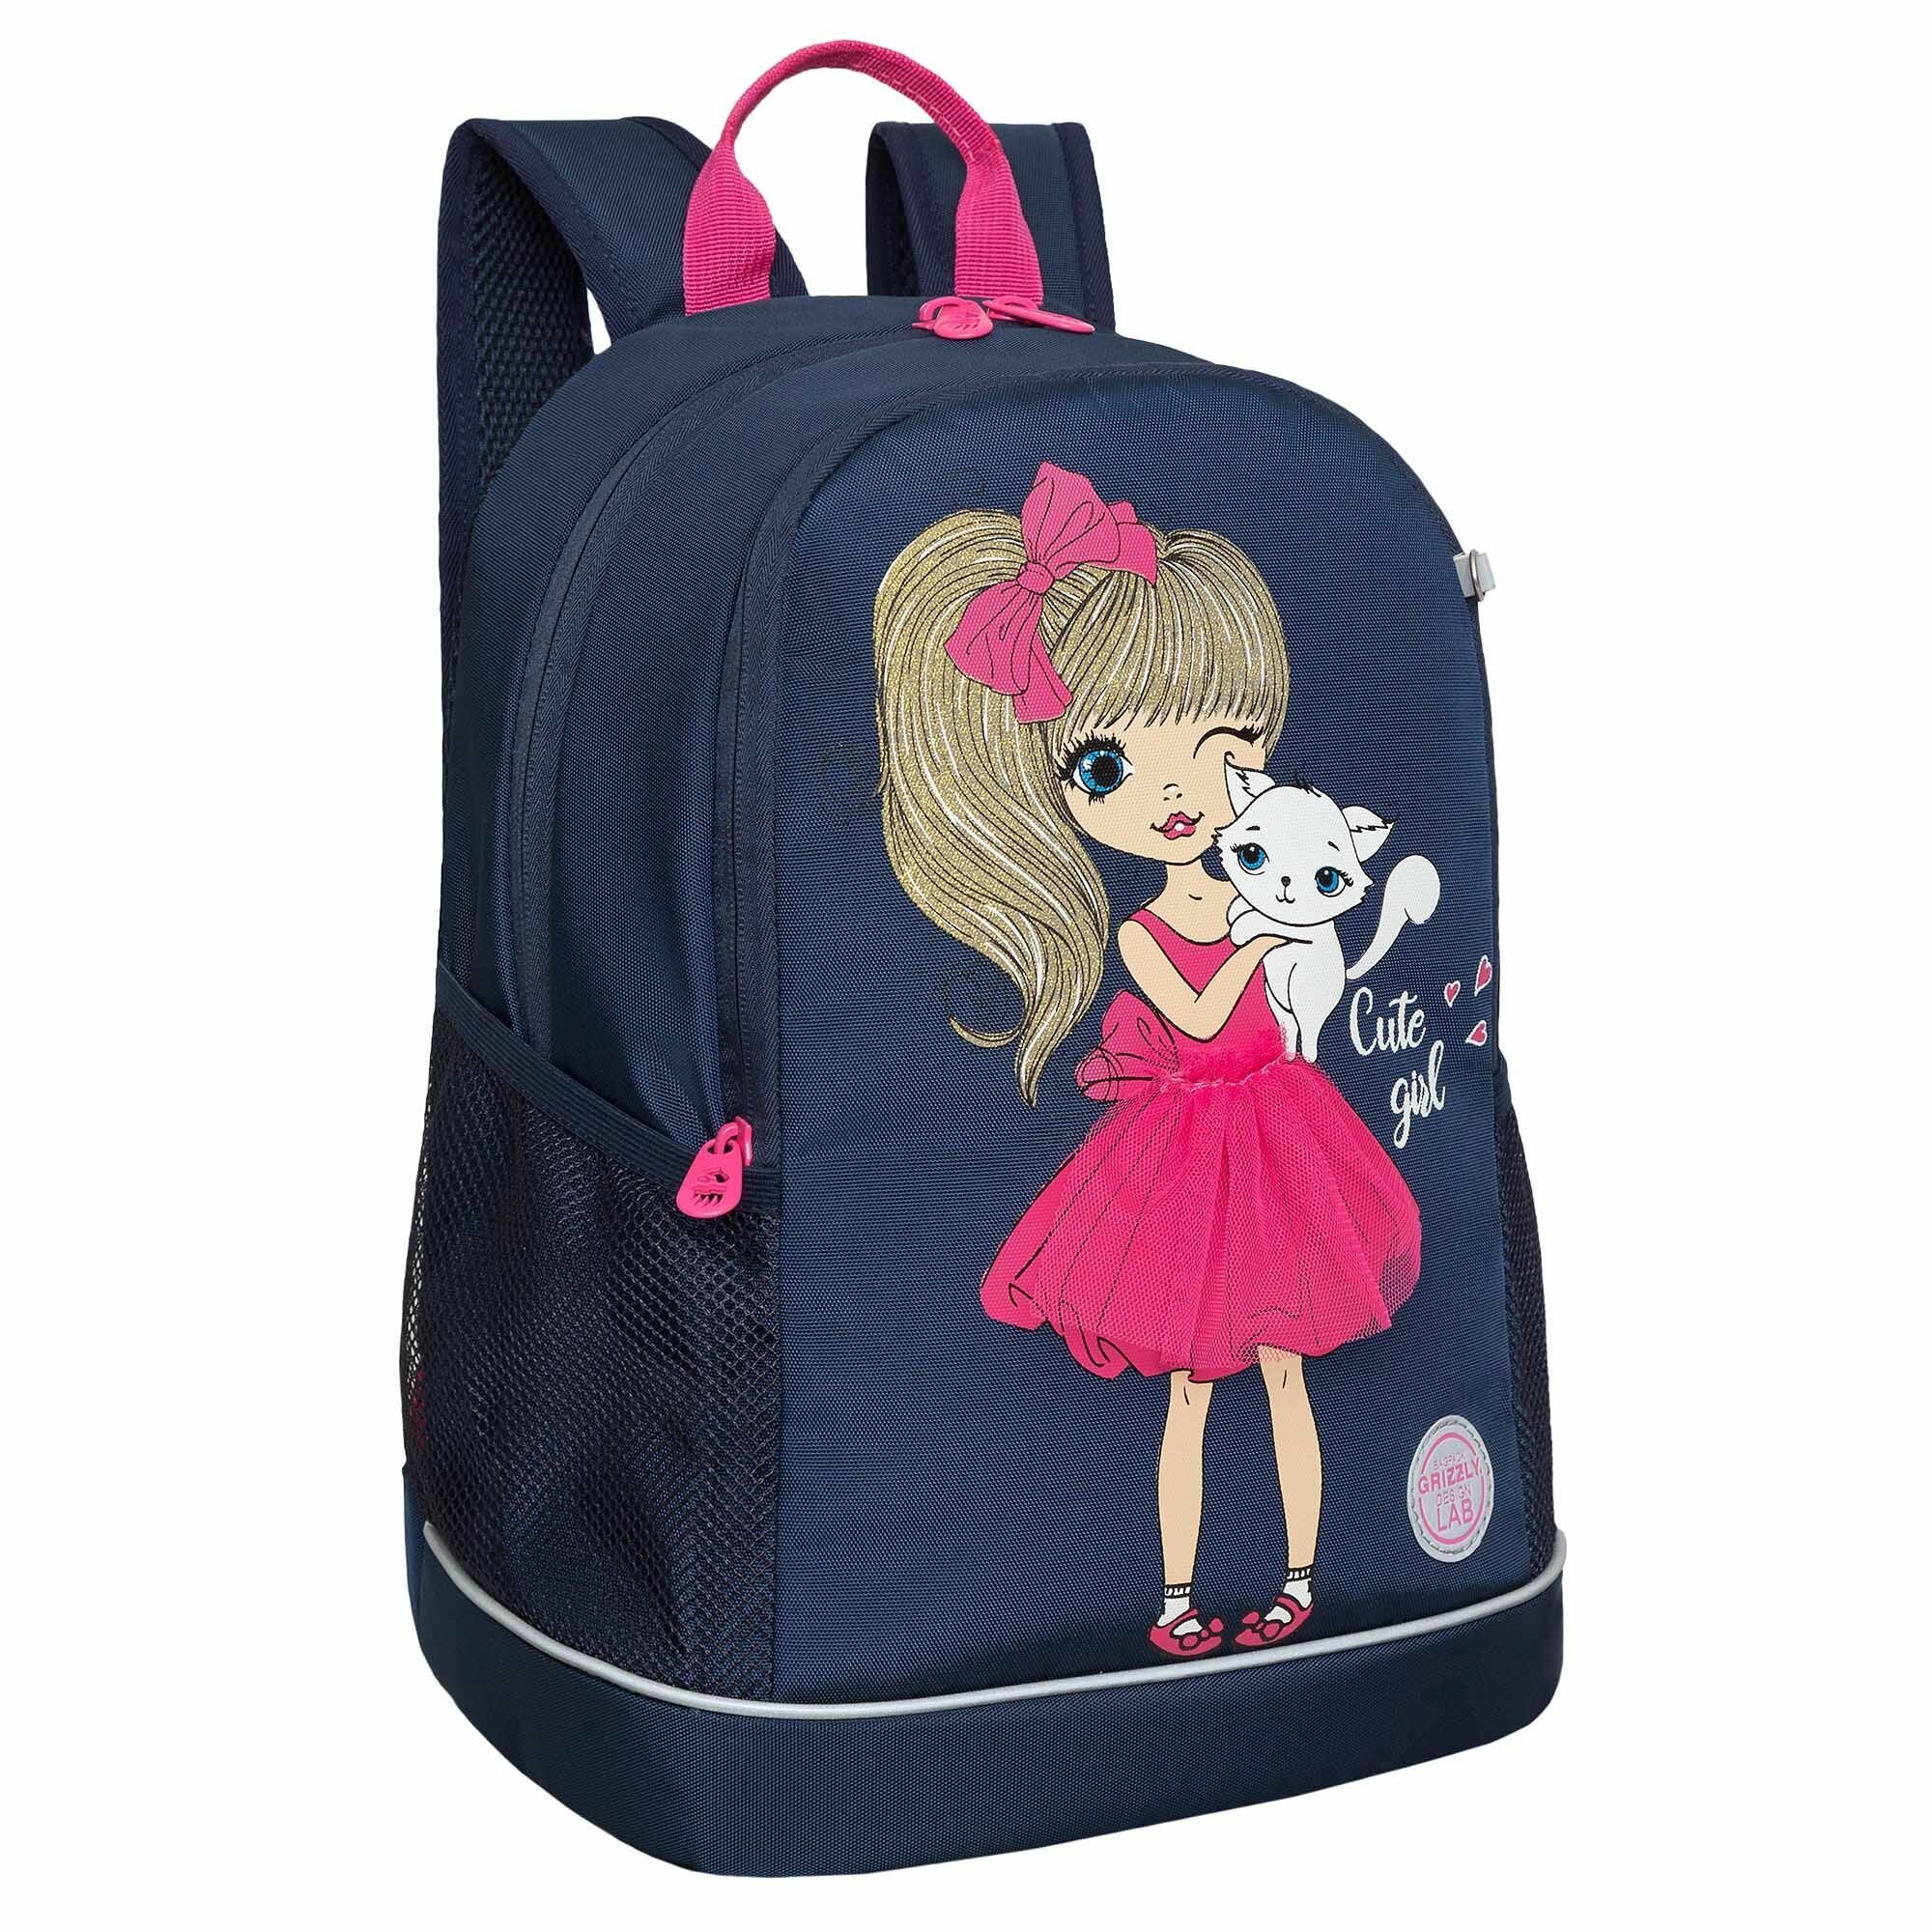 Рюкзак школьный для девочки подростка, с ортопедической спинкой, для средней школы, GRIZZLY (темно-синий)